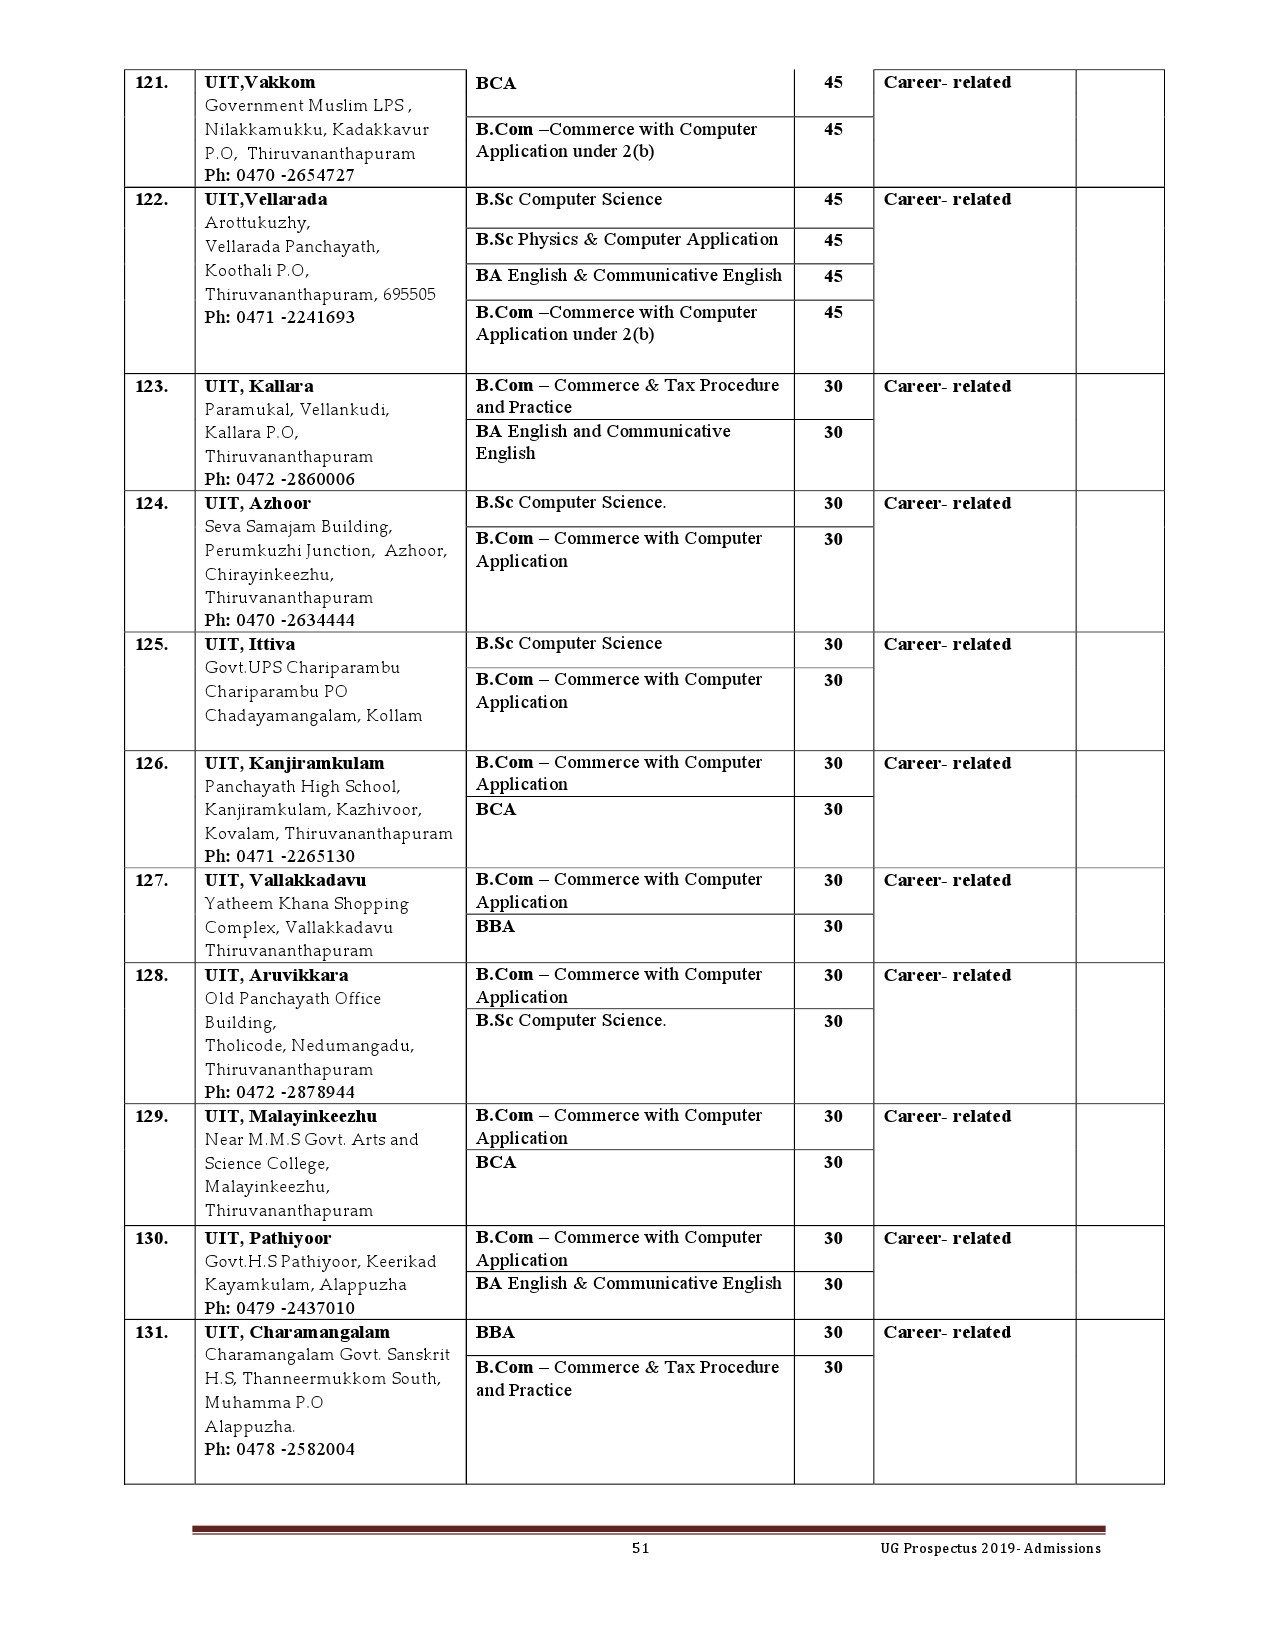 Kerala University UG Admission Prospectus 2019 - Notification Image 51